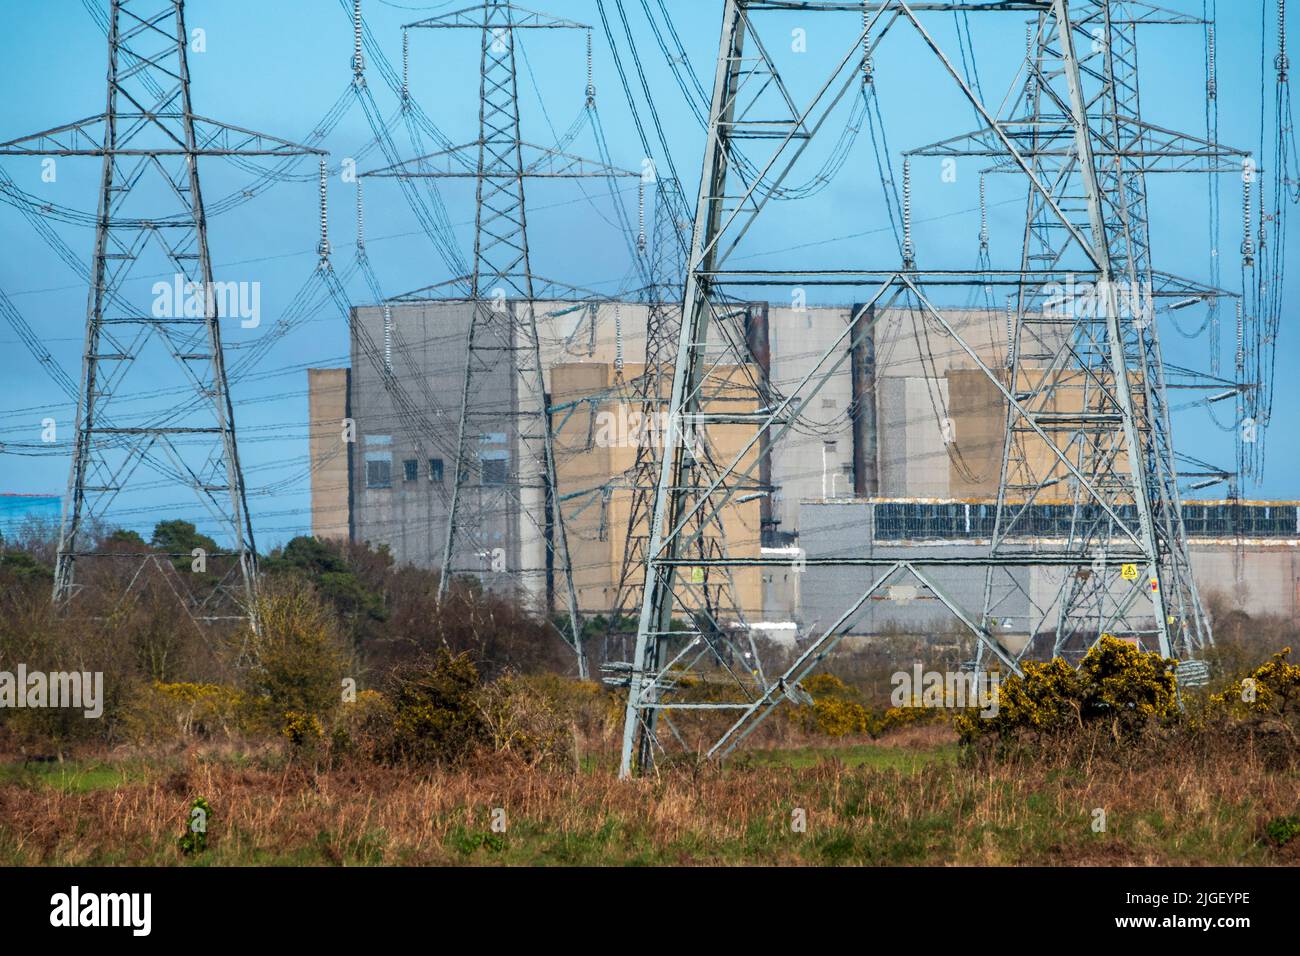 Las centrales nucleares de Sizewell se encuentran a gran distancia, con campos verdes en primer plano y muchas líneas de energía Foto de stock